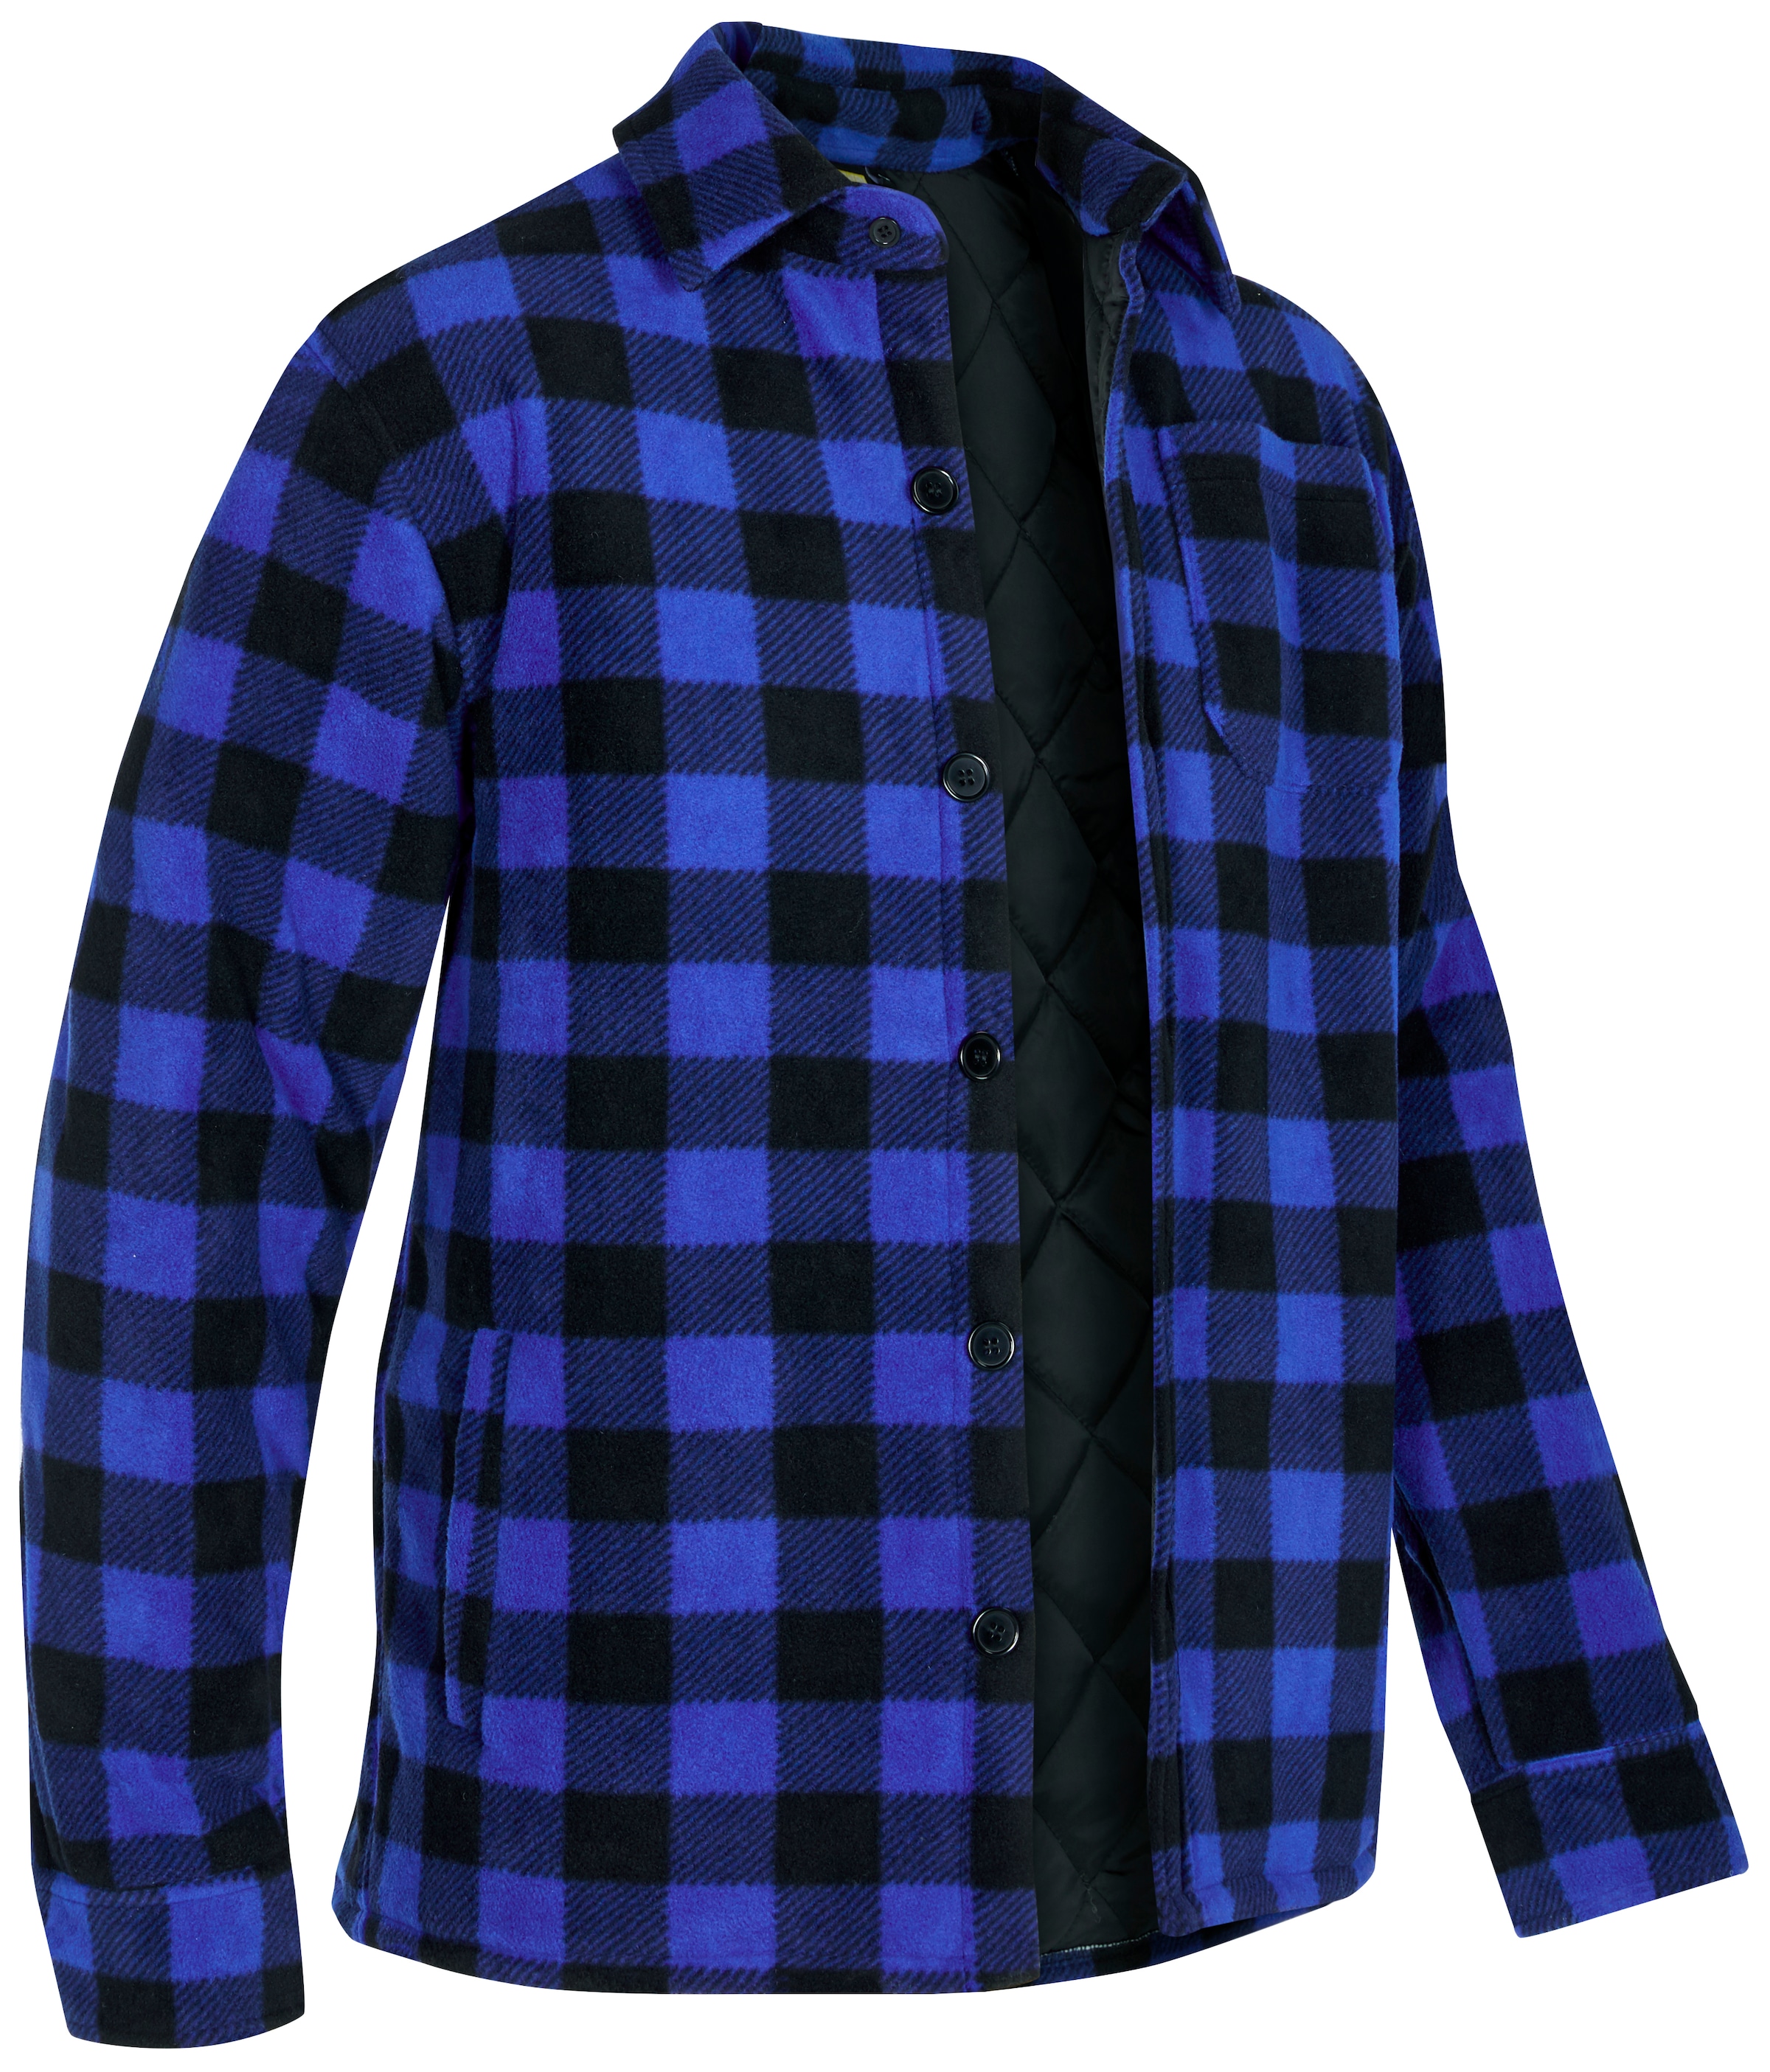 Northern Country Flanellhemd, (als Jacke offen oder Hemd zugeknöpft zu  tragen), warm gefüttert, mit 5 Taschen, mit verlängertem Rücken,  Flanellstoff bei ♕ | 